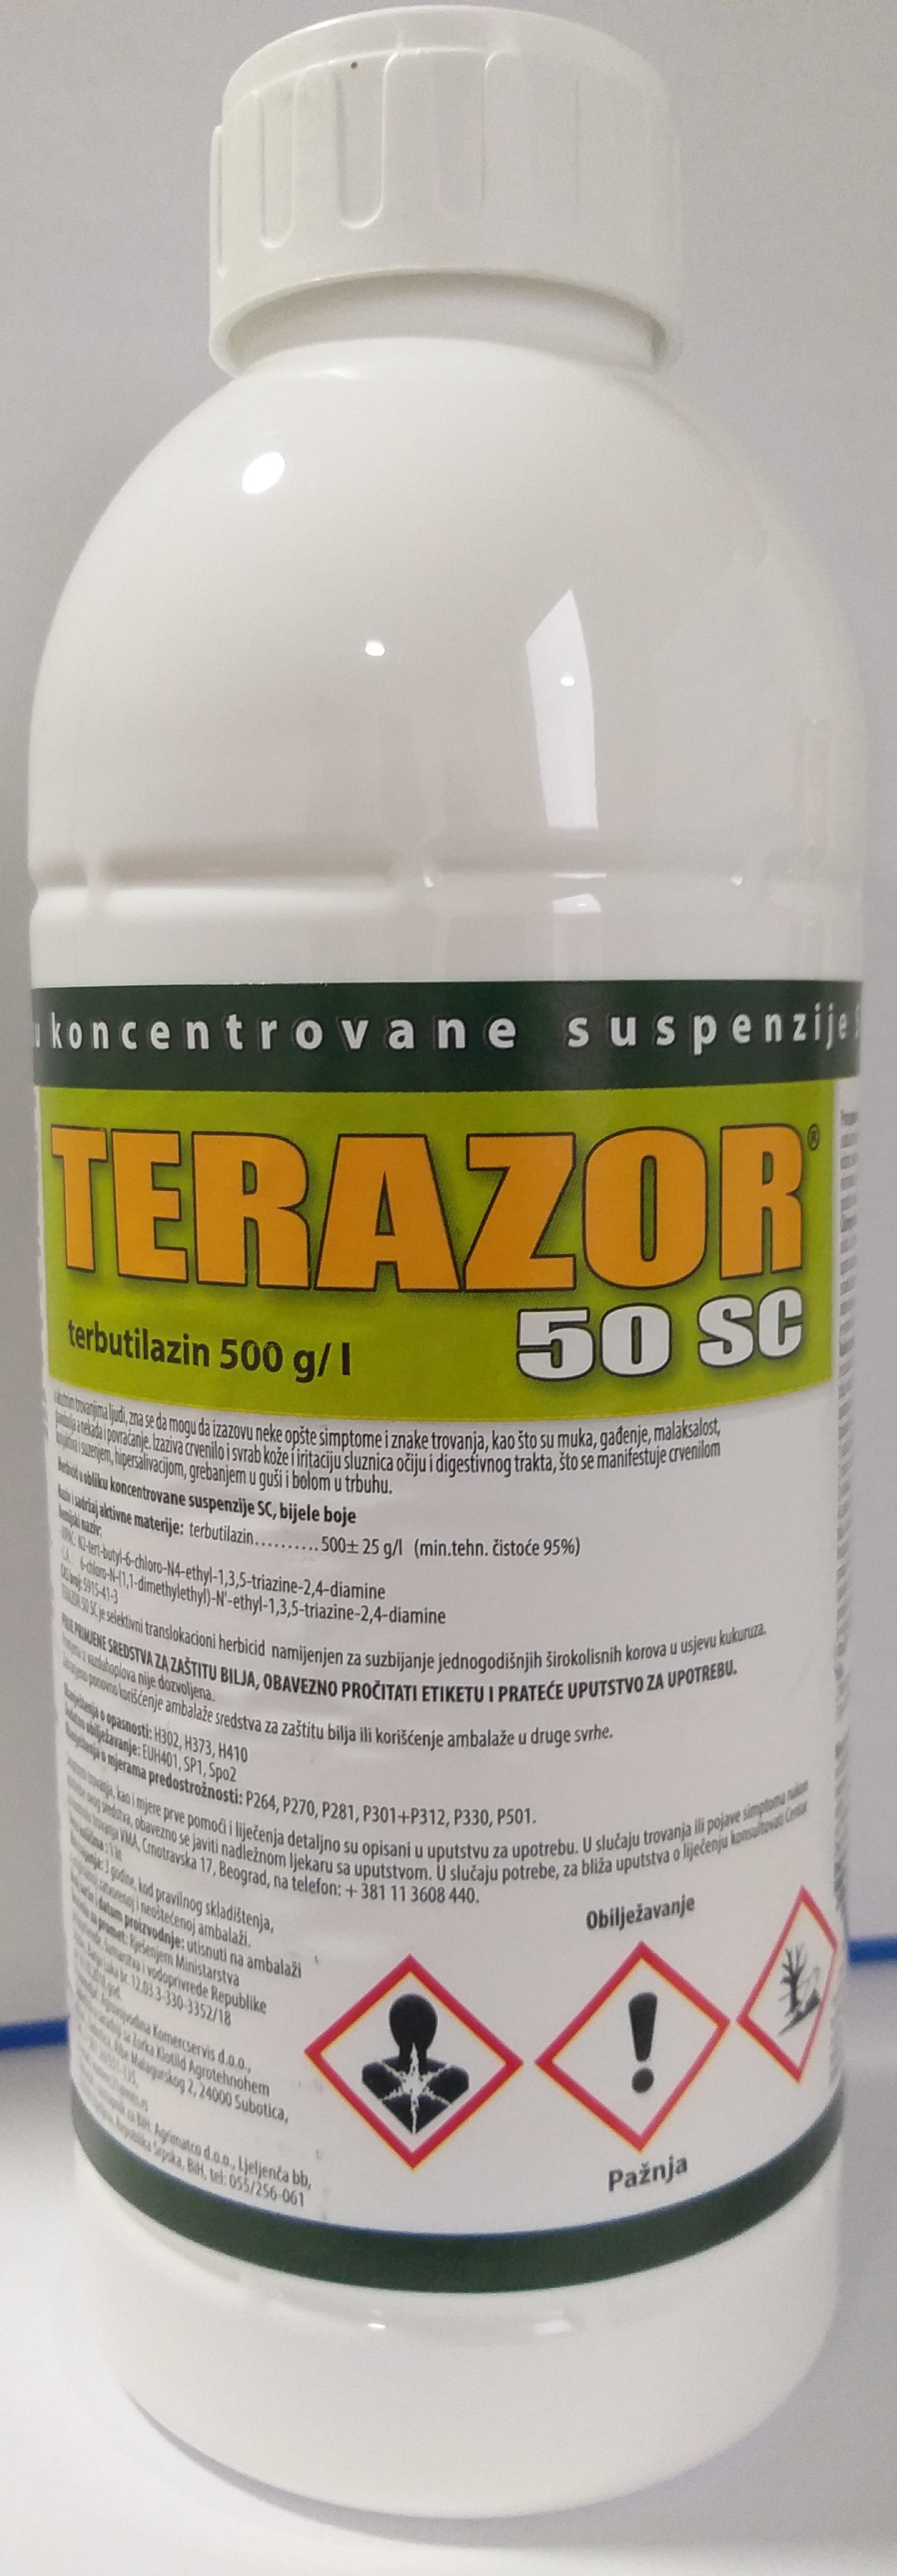 Terazor® 50 SC